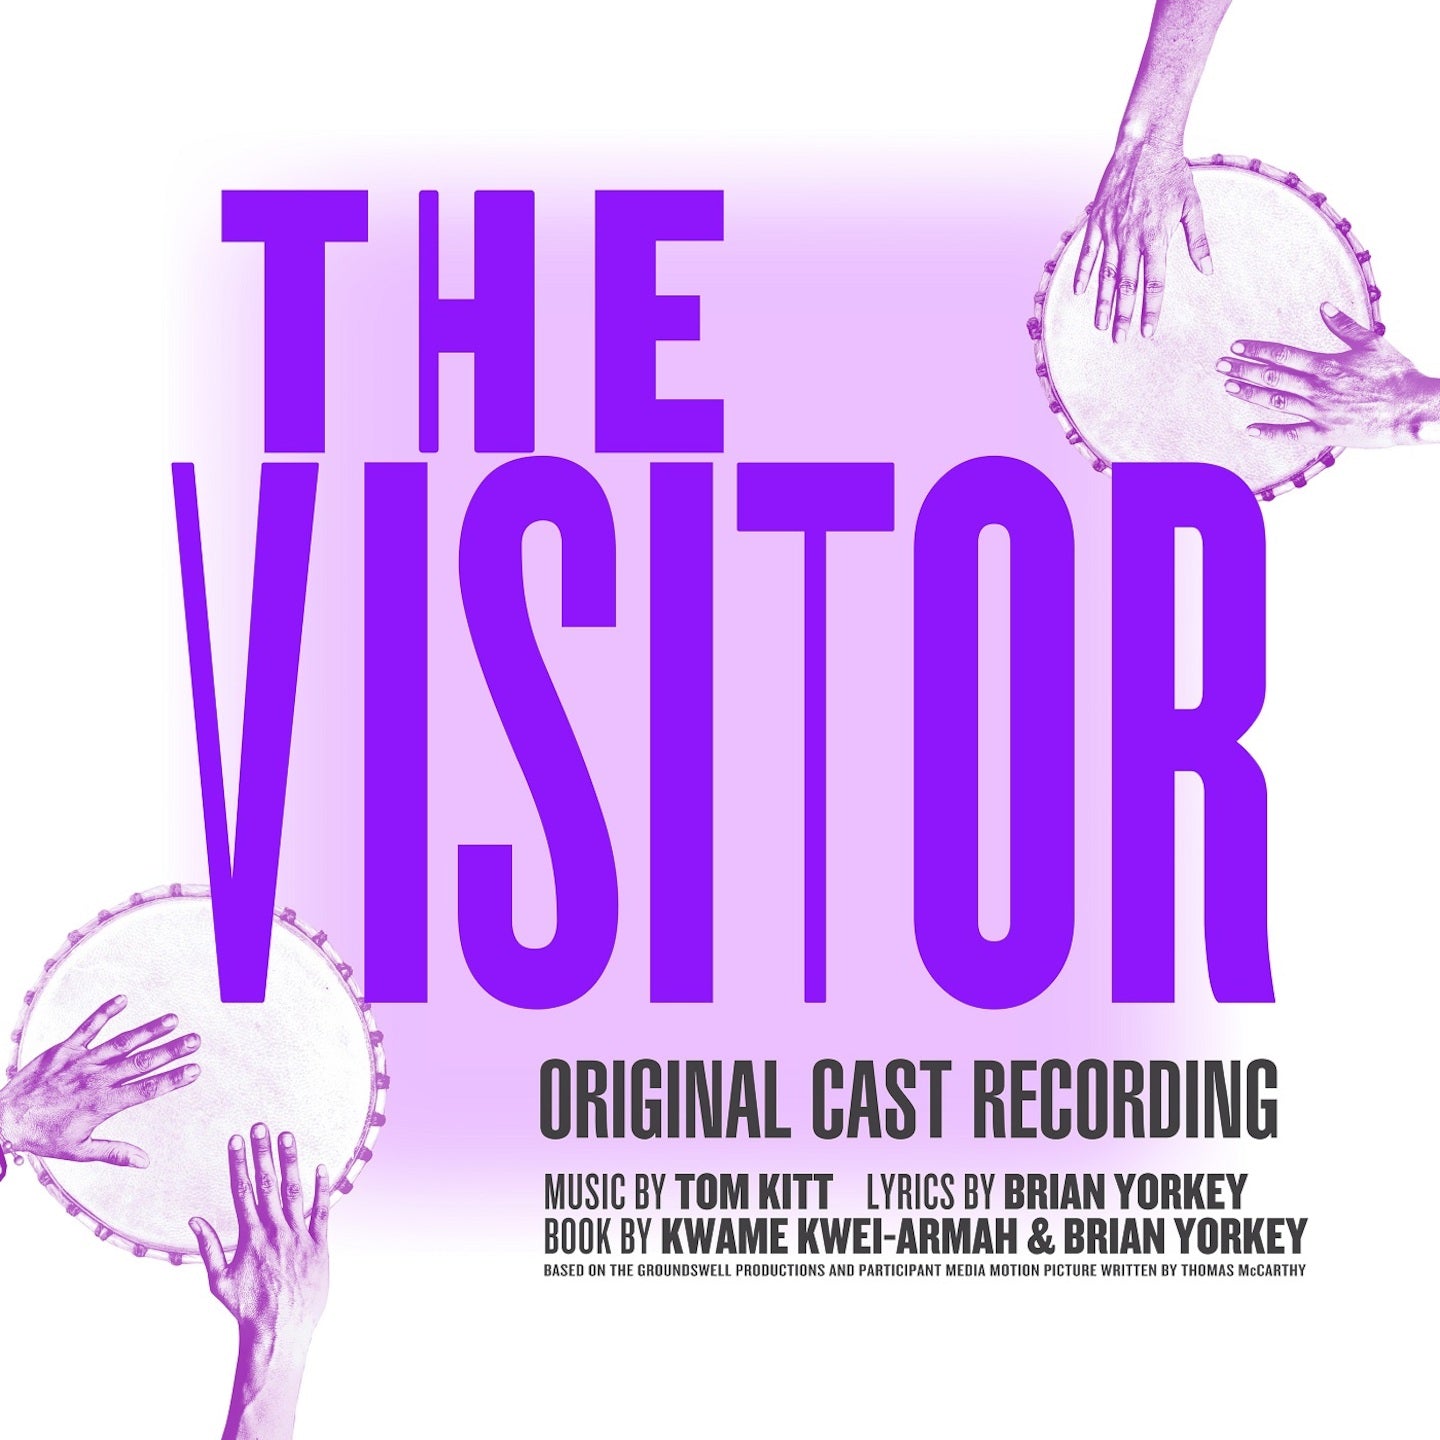 Featured image for “THE VISITOR (ORIGINAL CAST RECORDING) [Digital Album]”